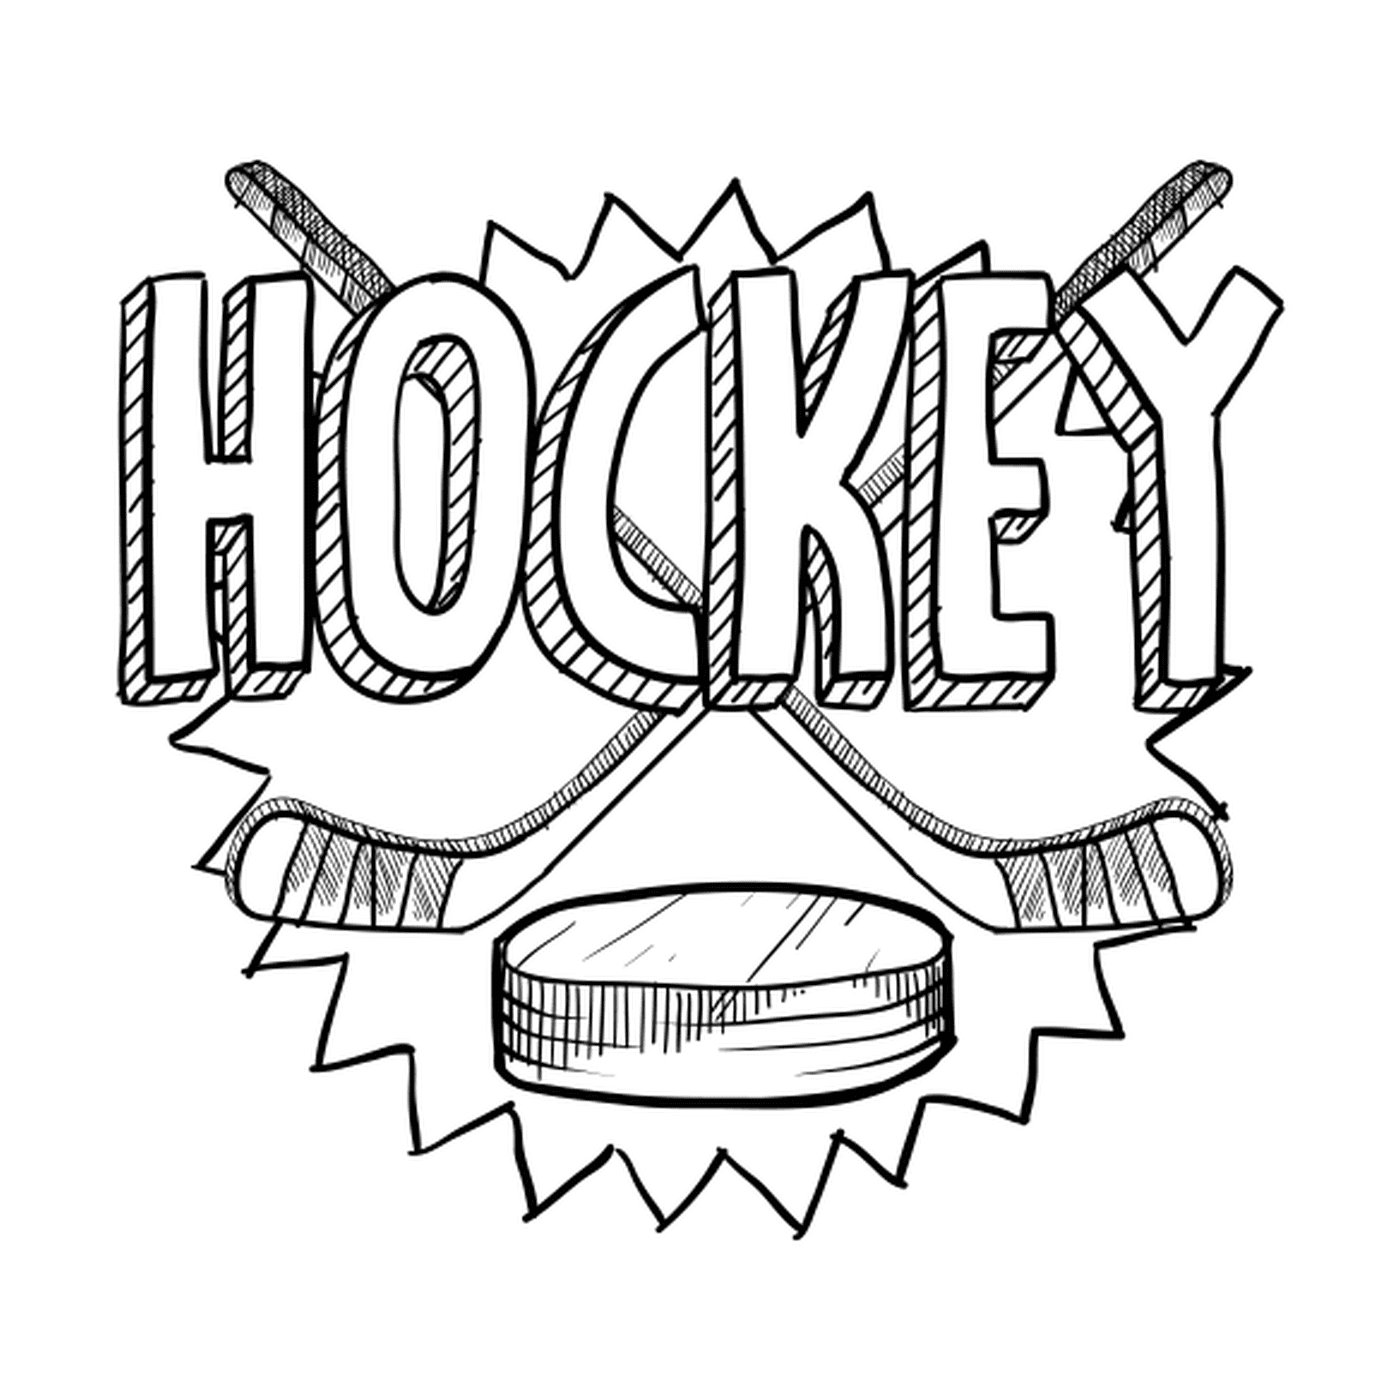  Equipo de hockey 